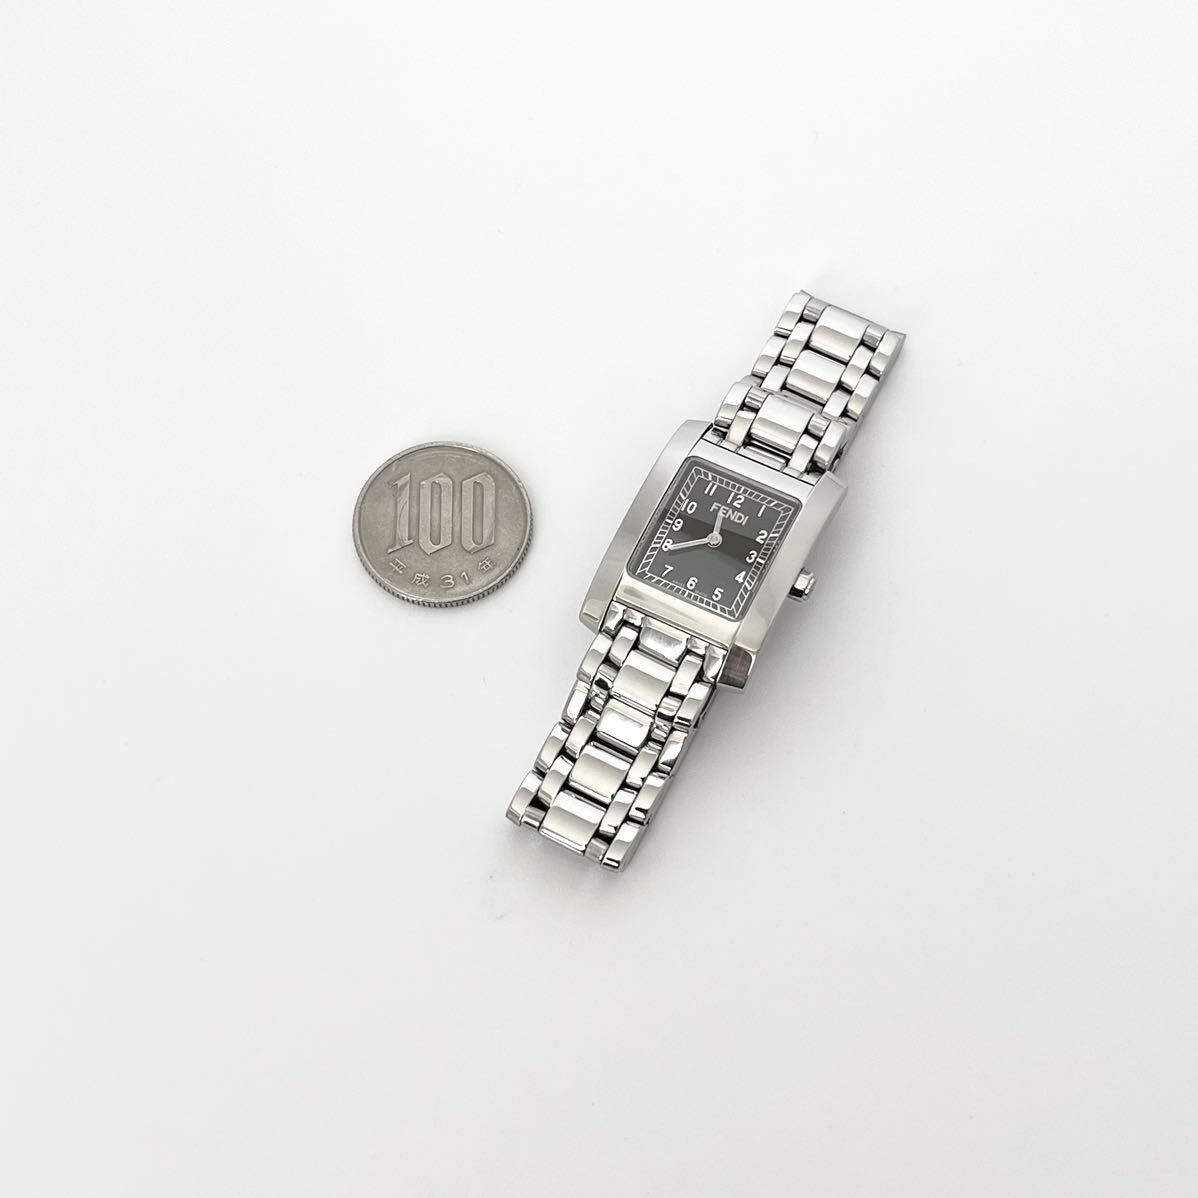 [ работа ] отполирован Fendi FENDI 7000L женские наручные часы прекрасный товар батарейка новый товар чёрный циферблат s1600